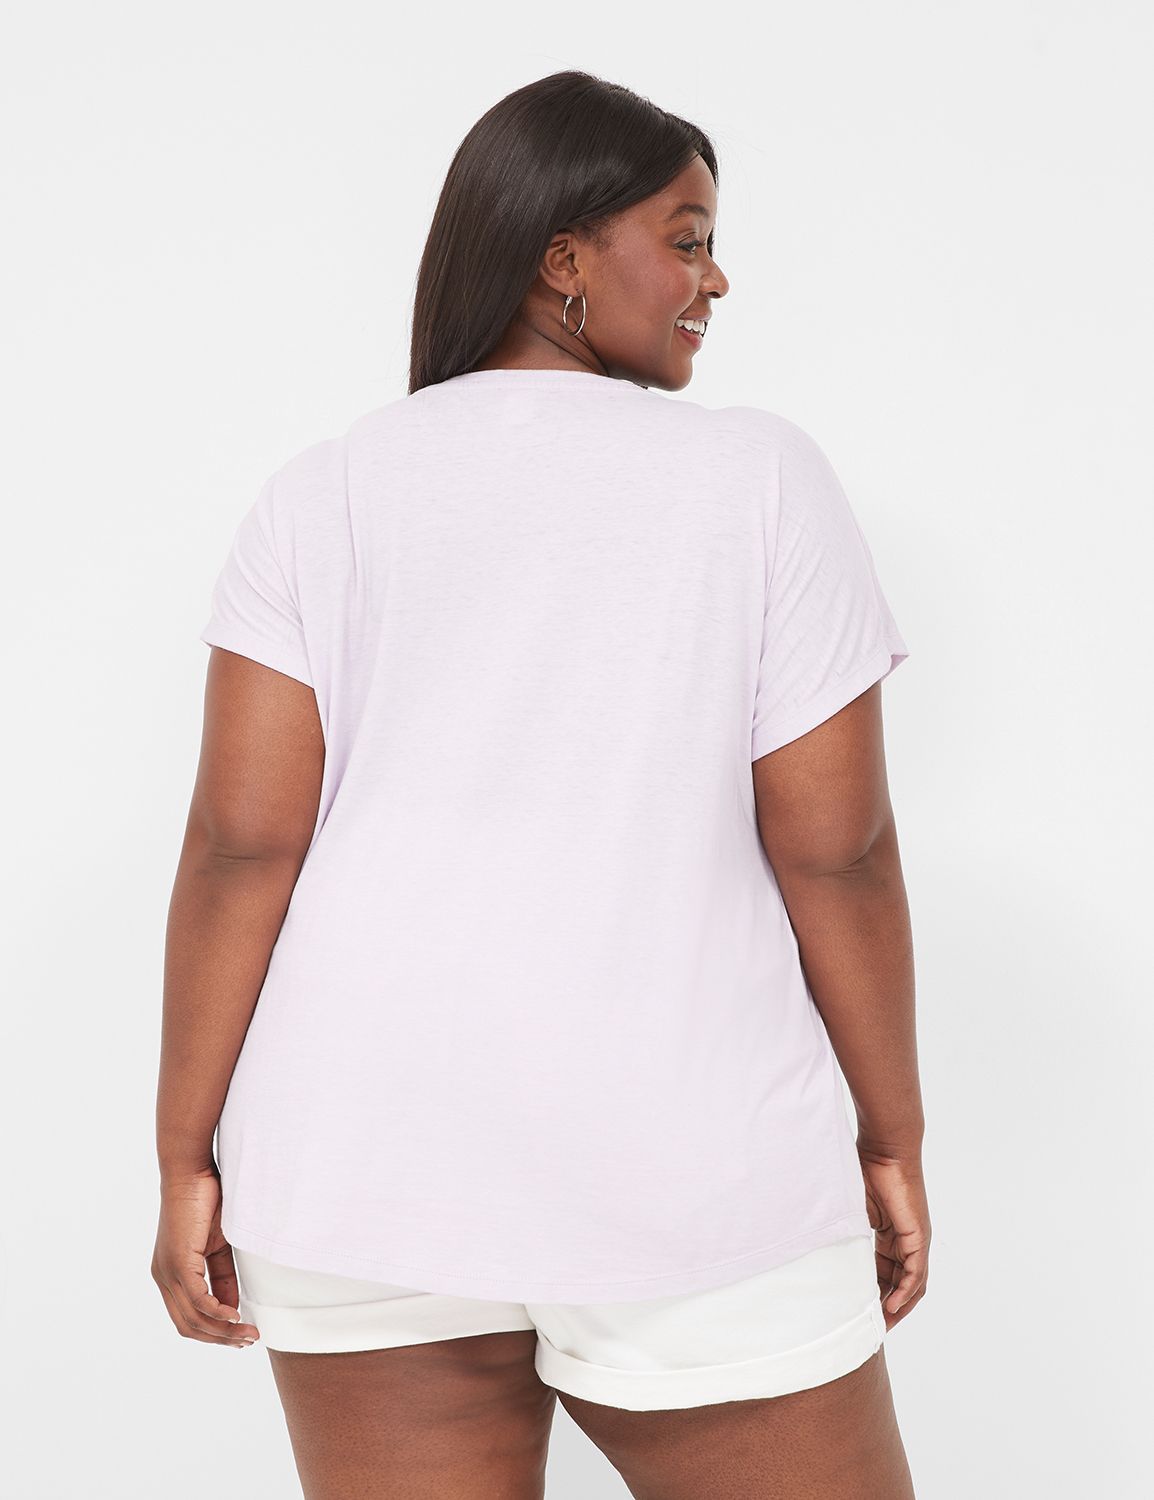 Women's Plus Size Tops - Shop Plus Size T-Shirts